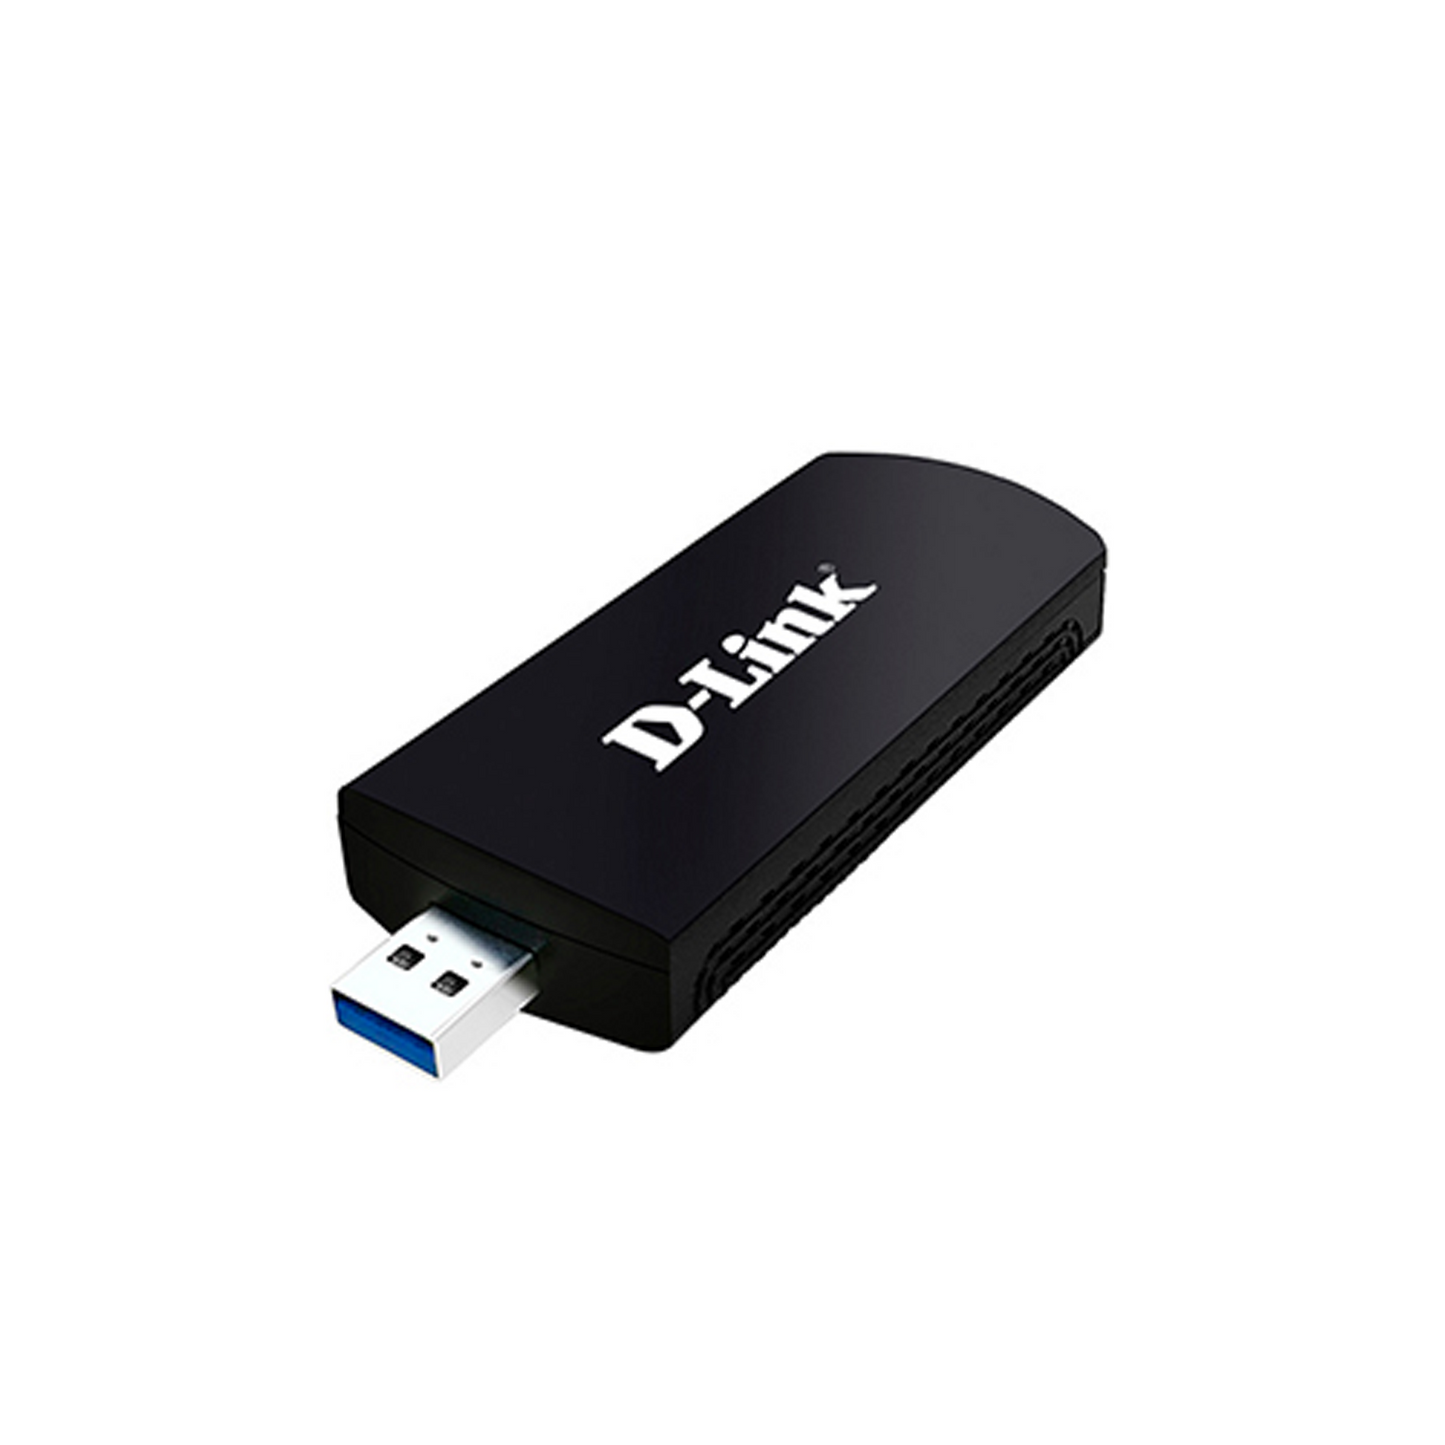 Wireless AC1900 Dual Band USB 3.0 Adapter | DWA-192-B1